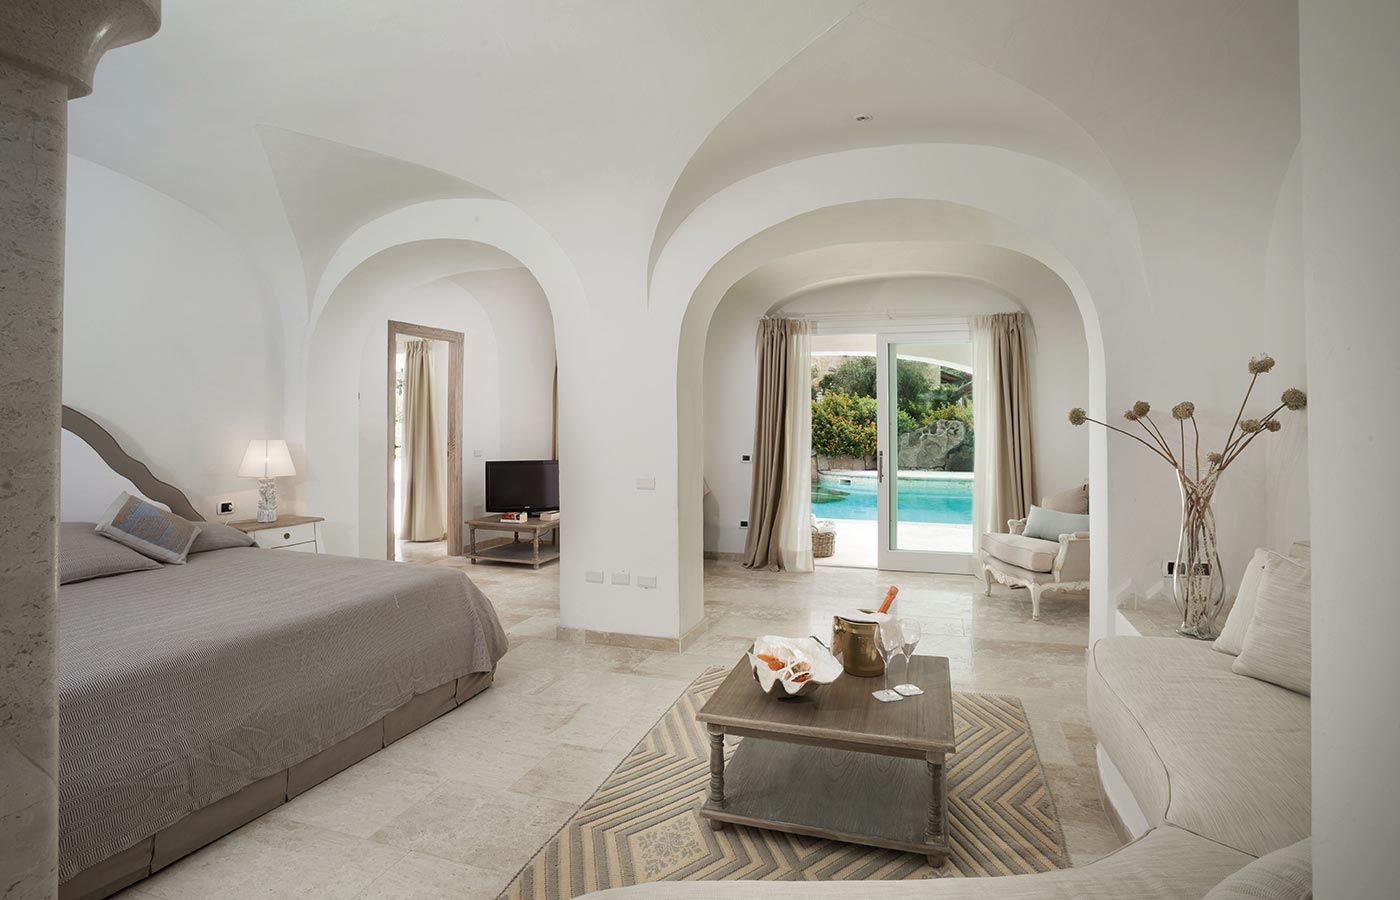 Suite con piscina privata presso l'hotel Pulicinu a Baja Sardinia